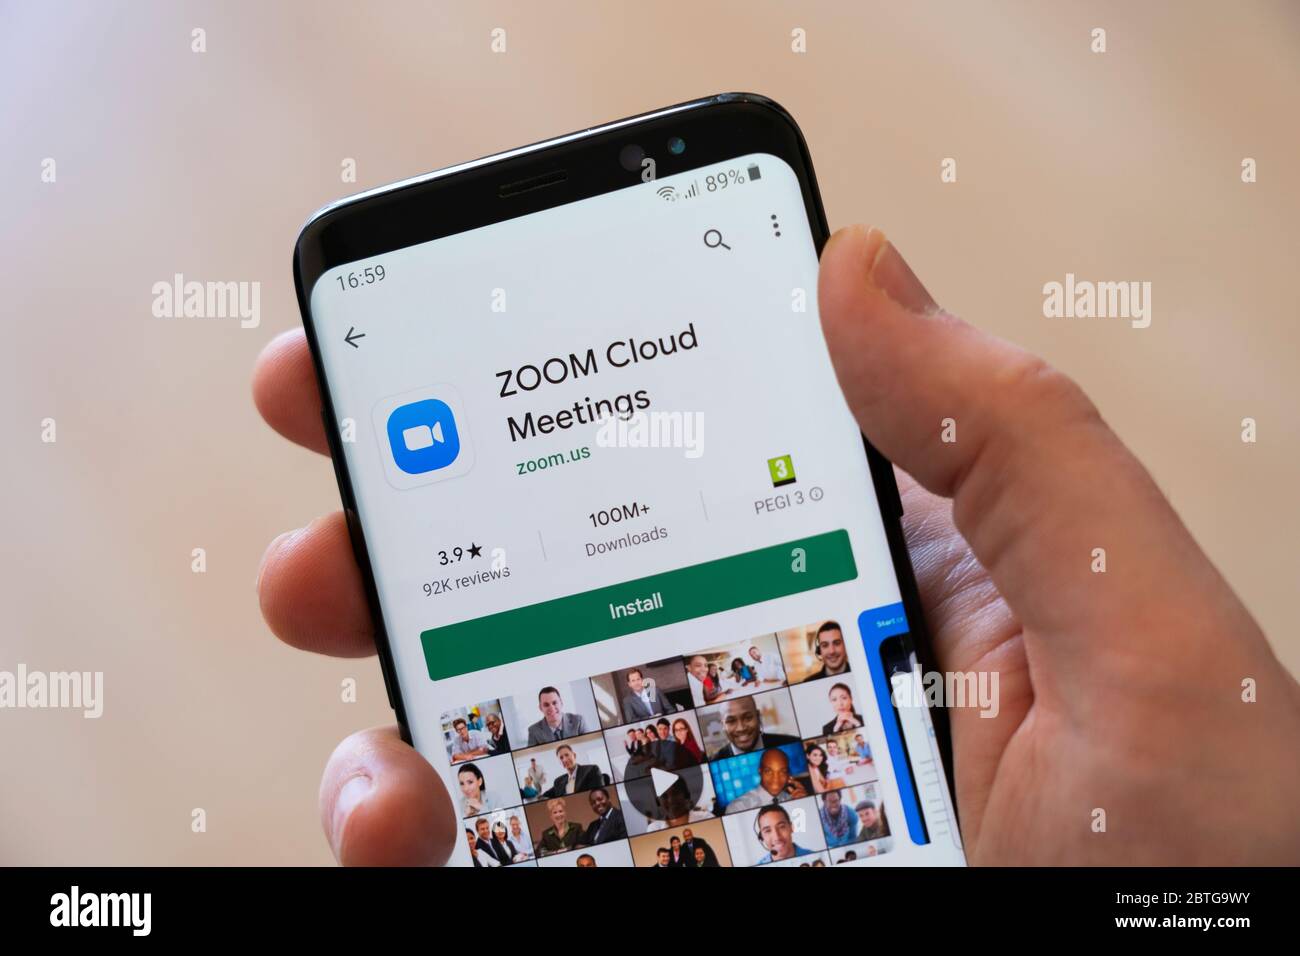 Ein Mann die Hand hält ein Smartphone zeigt die Google Play-Installationsbildschirm für die Video-Anruf Medien-App Zoom Cloud Meetings Stockfoto